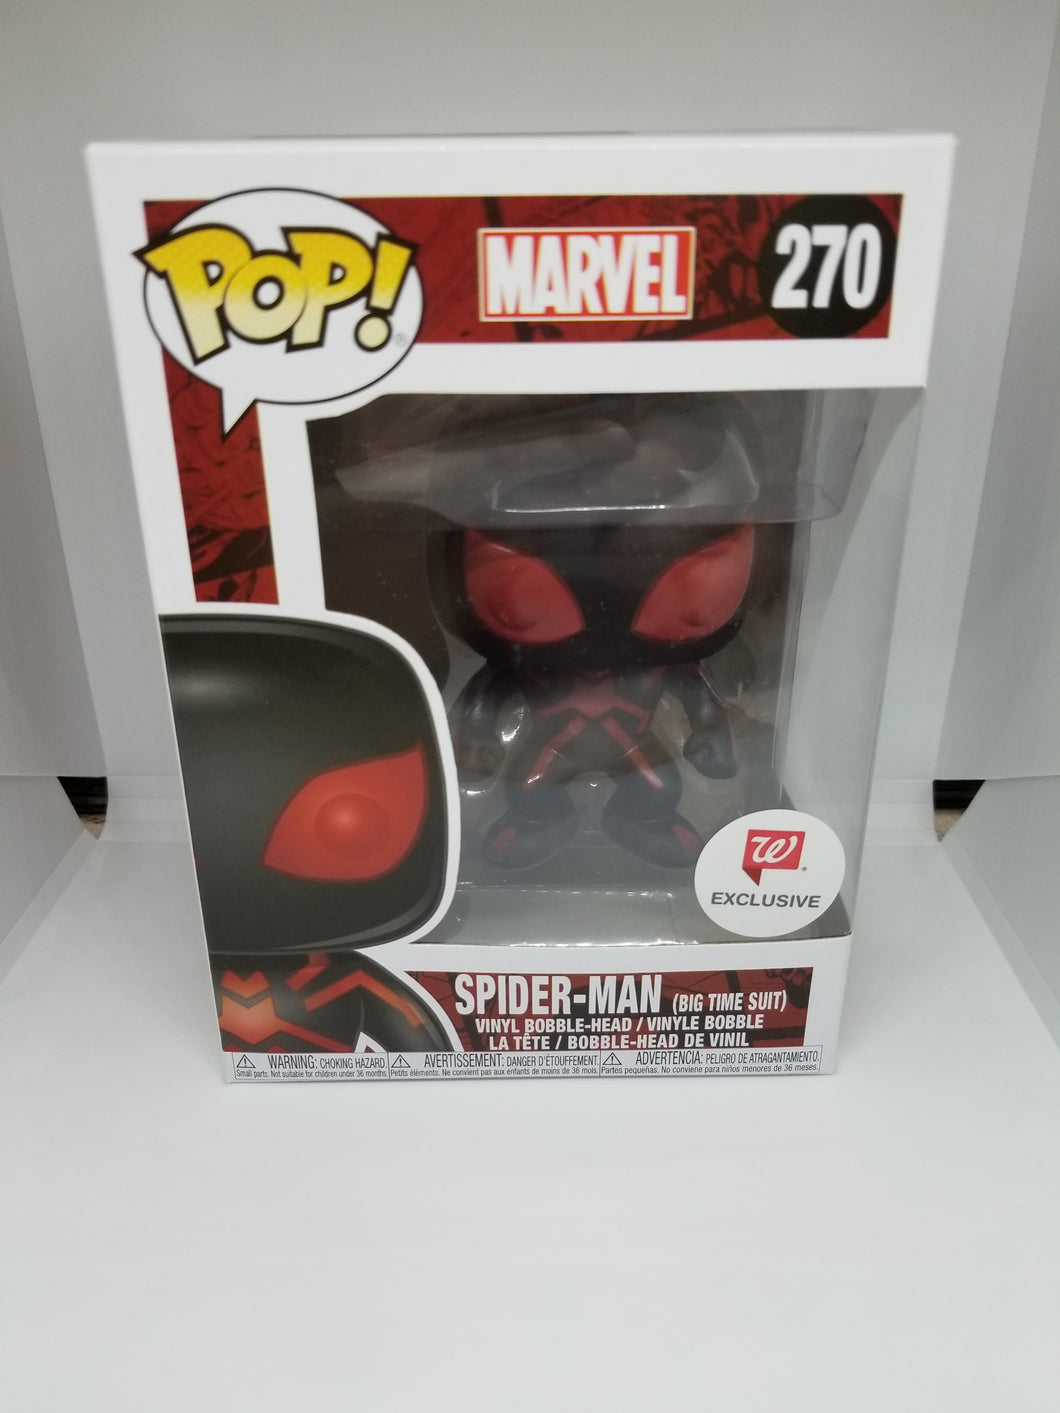 Funko Pop! Marvel: Spider-Man ( big time suit )